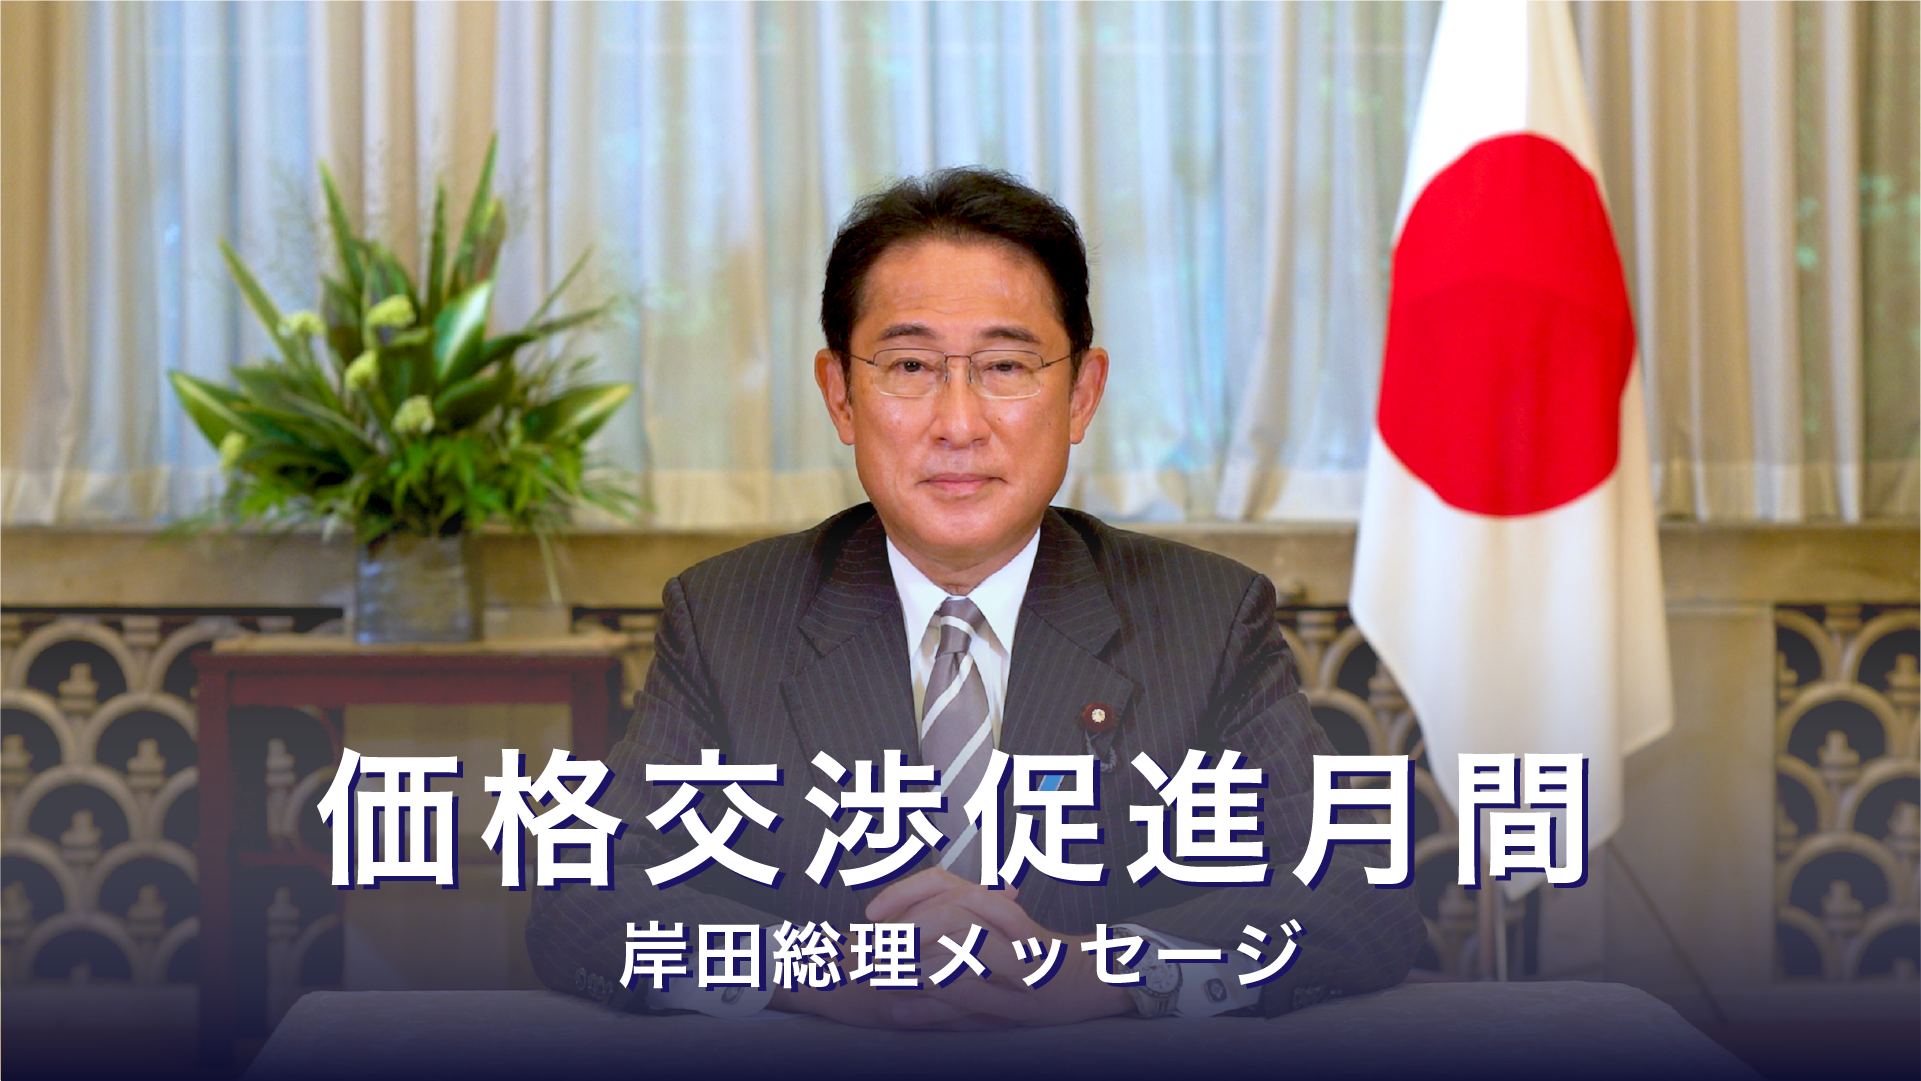 価格交渉促進月間に関する岸田総理メッセージ